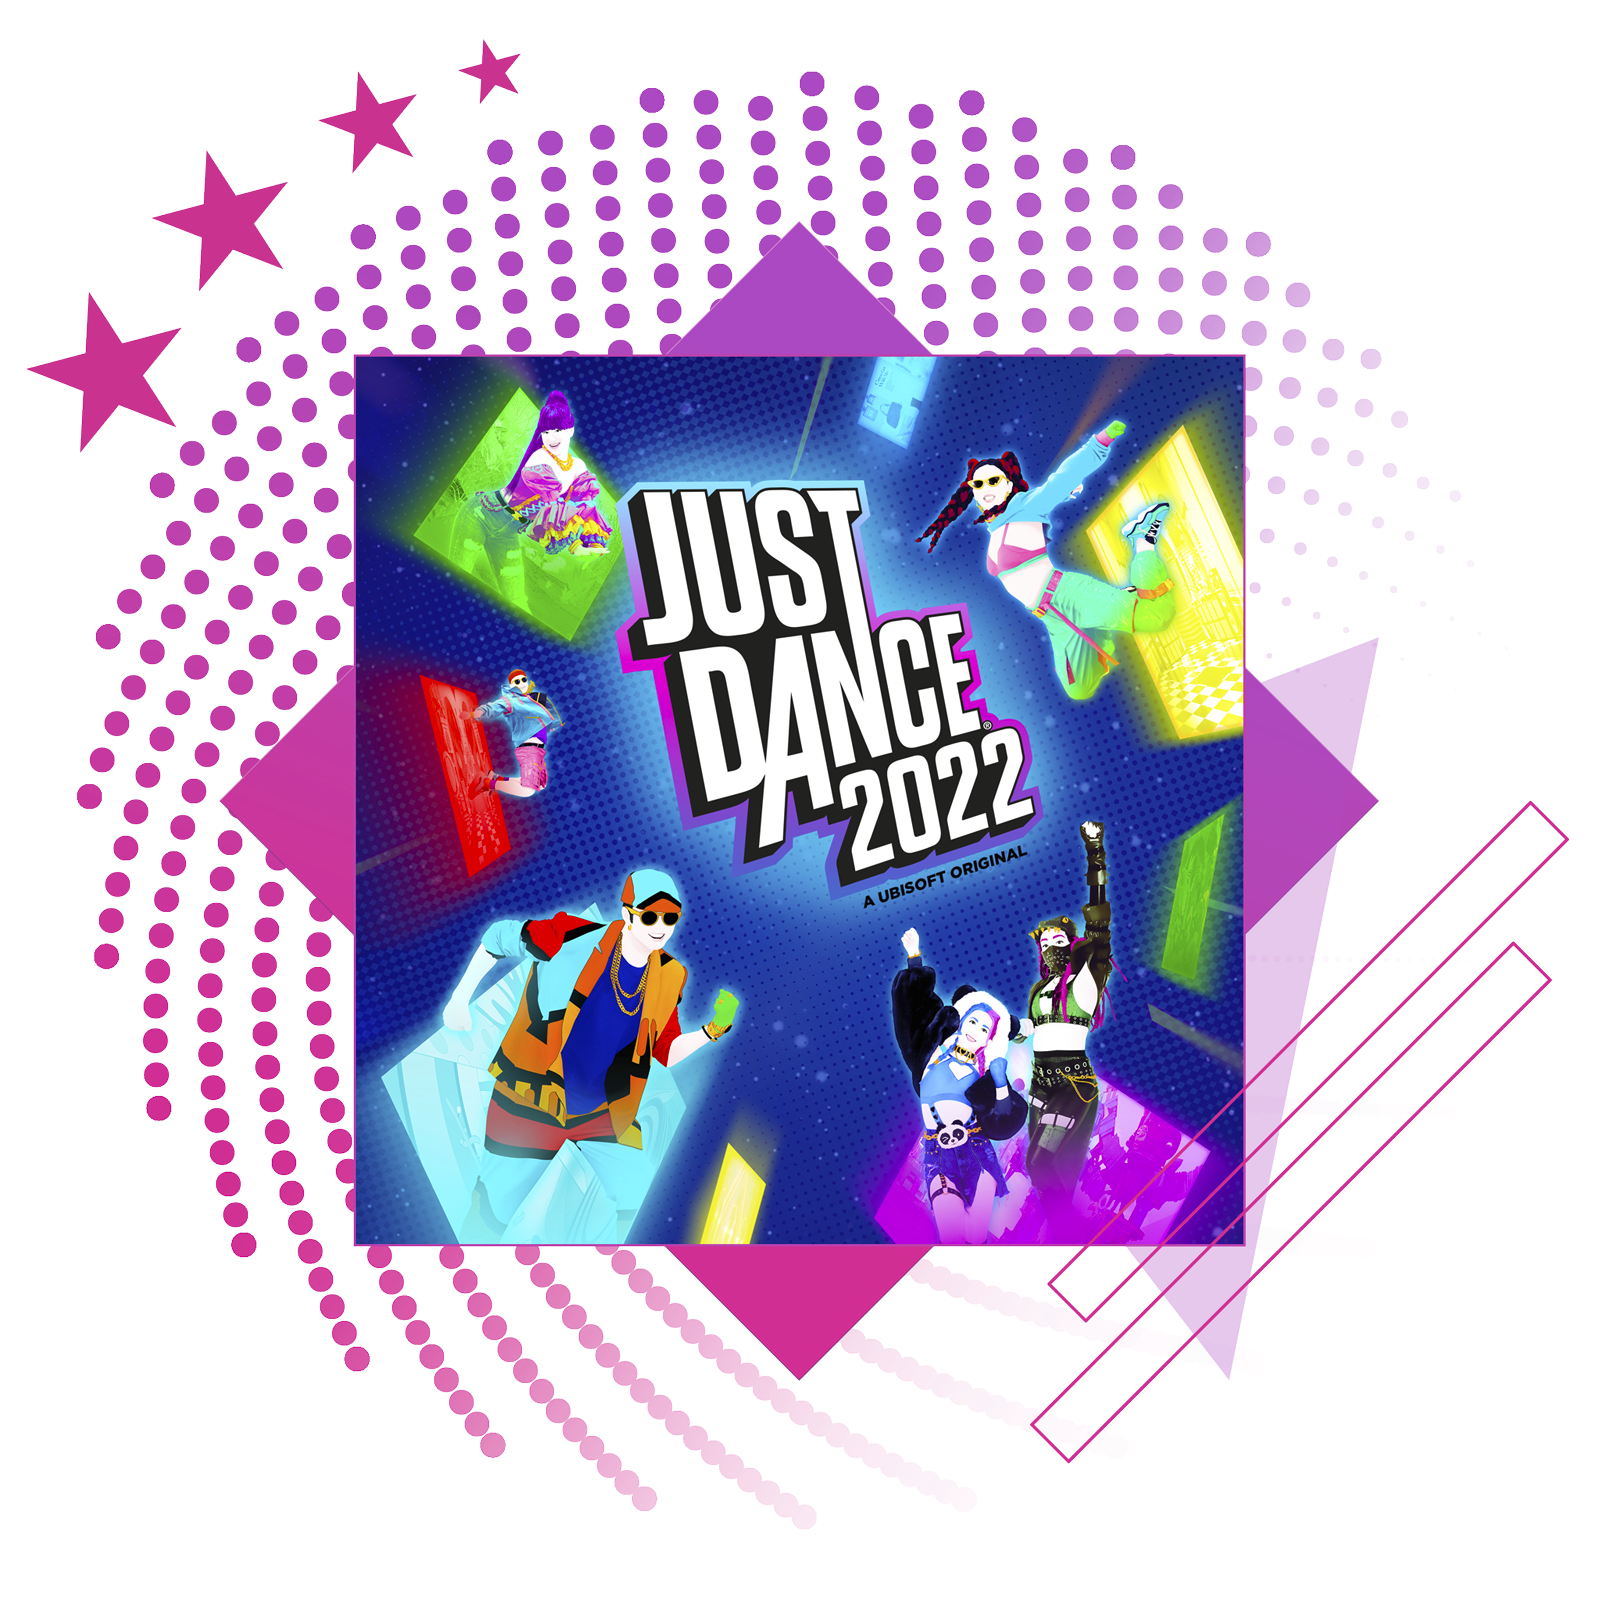 Imagem do destaque de melhores jogos de ritmo com a arte principal de Just Dance 2022.